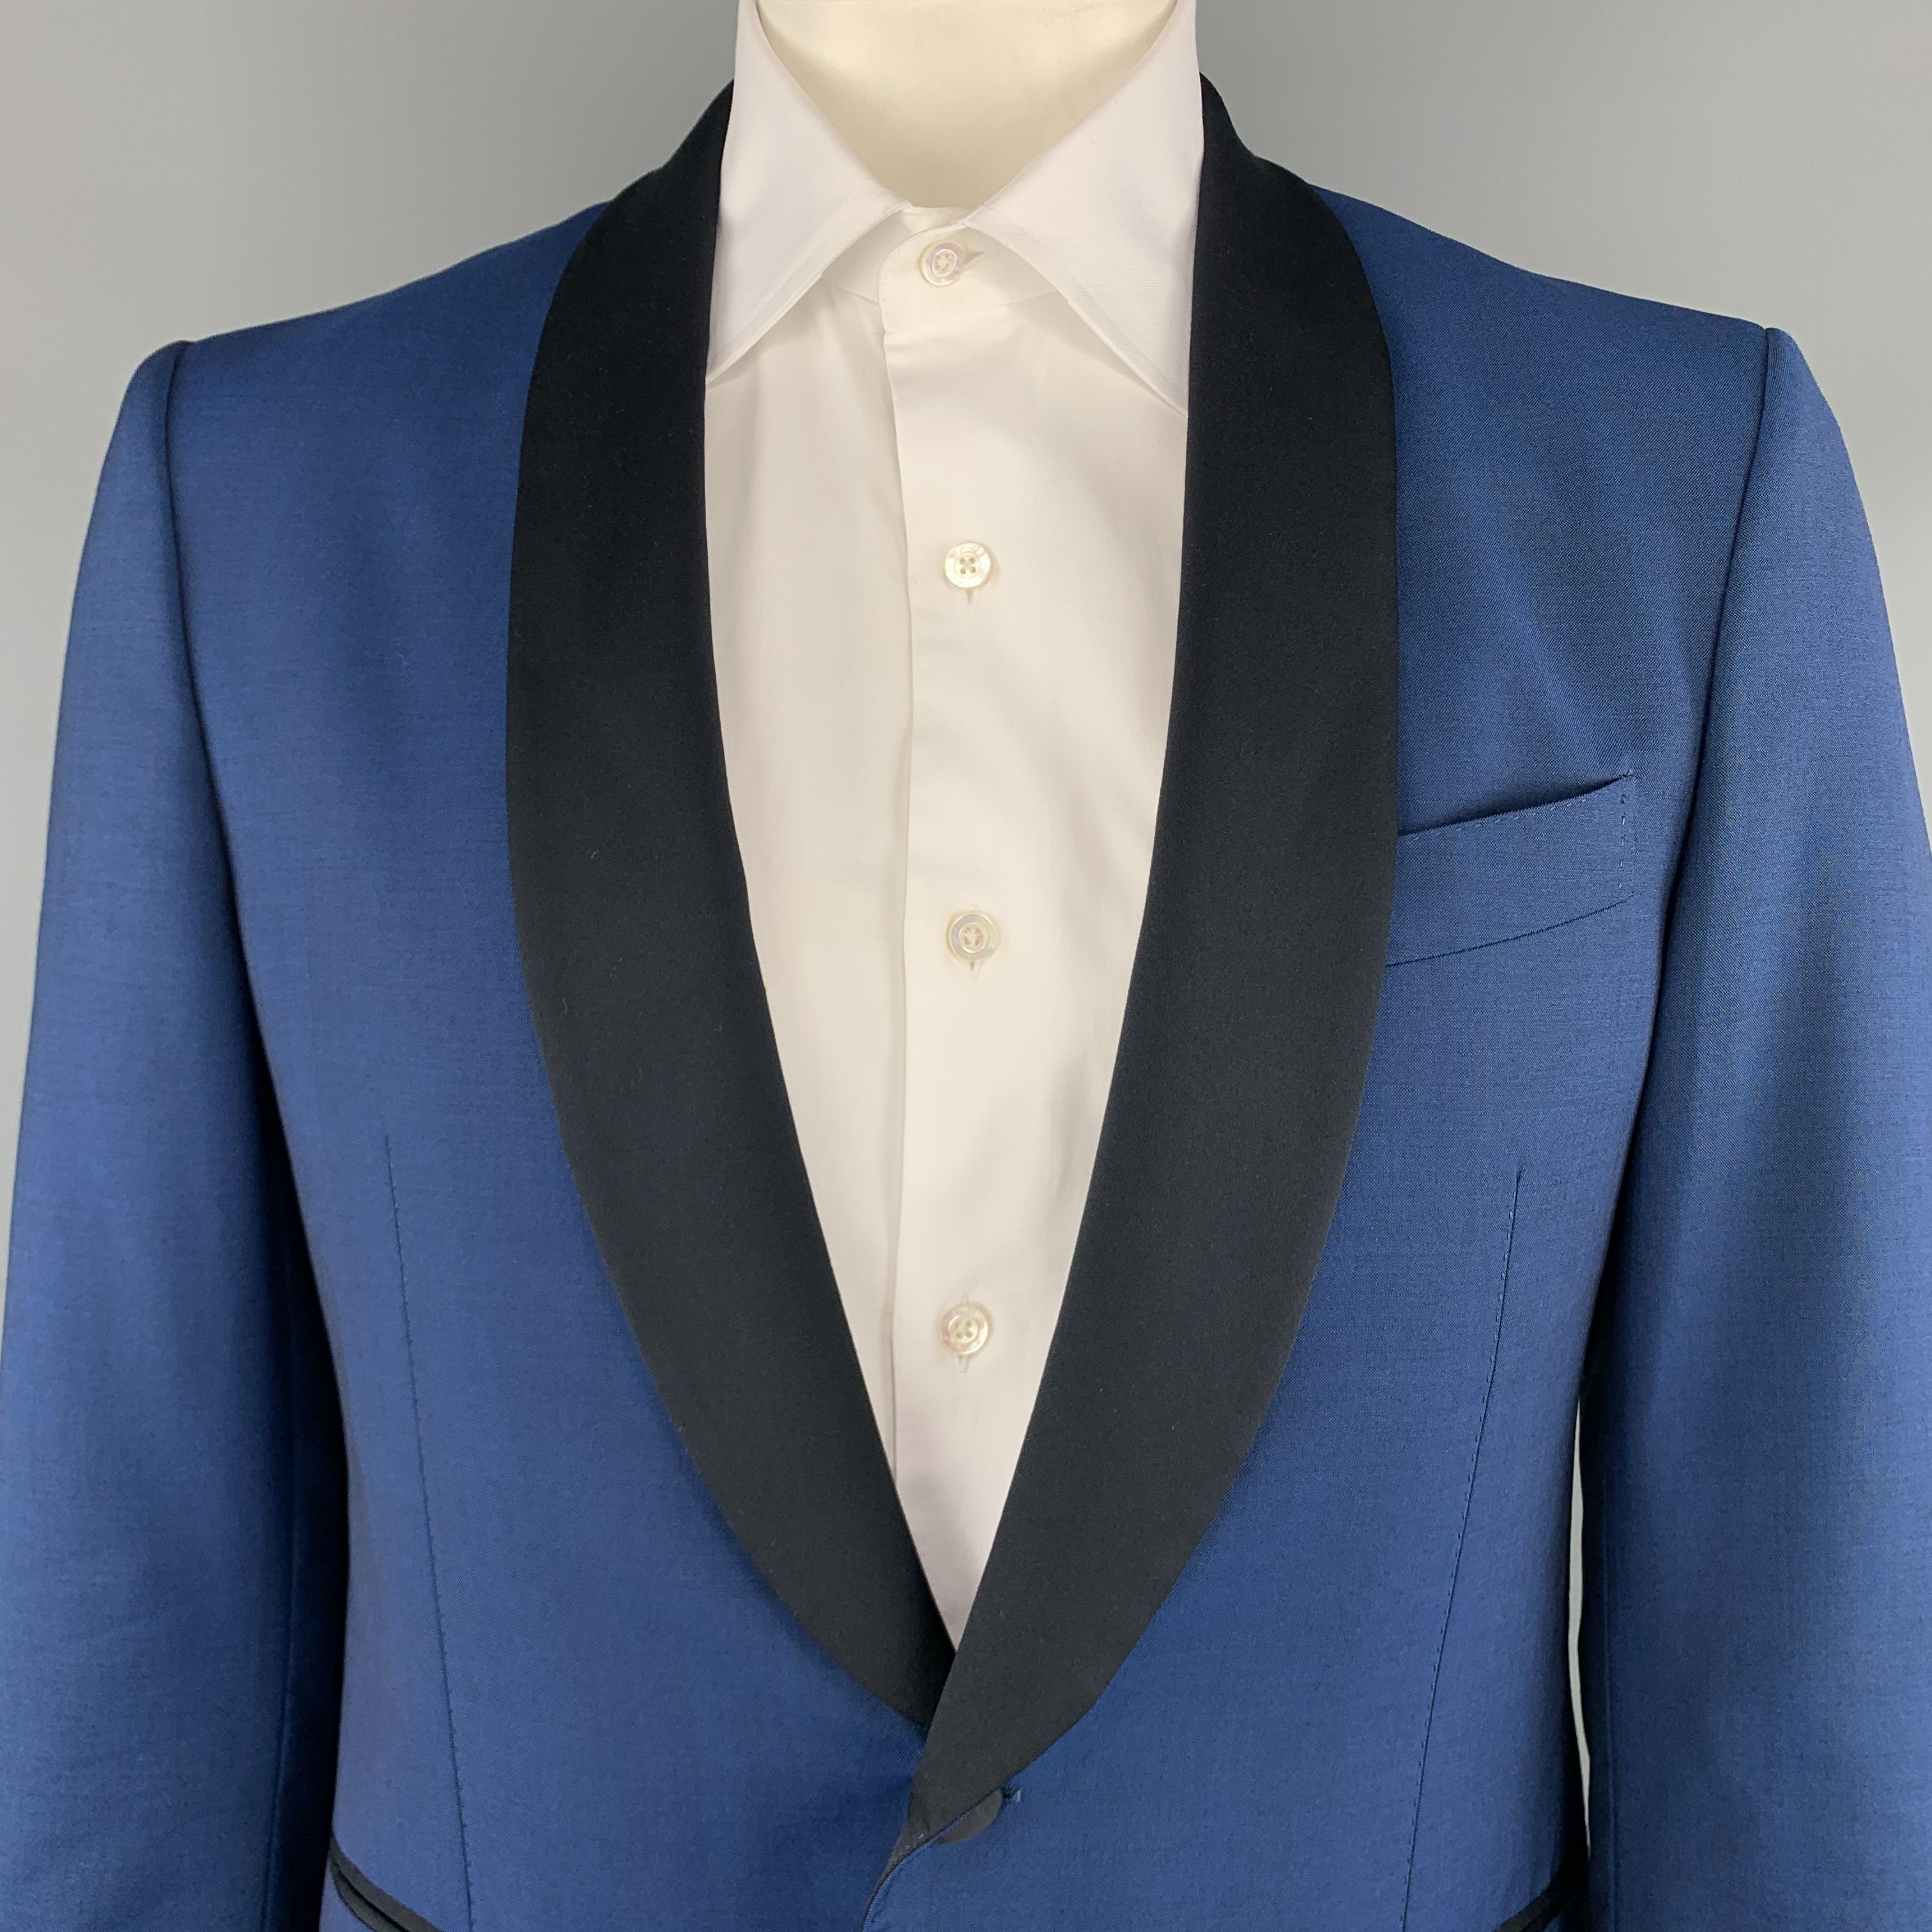 navy blue tuxedo jacket with black satin shawl lapel